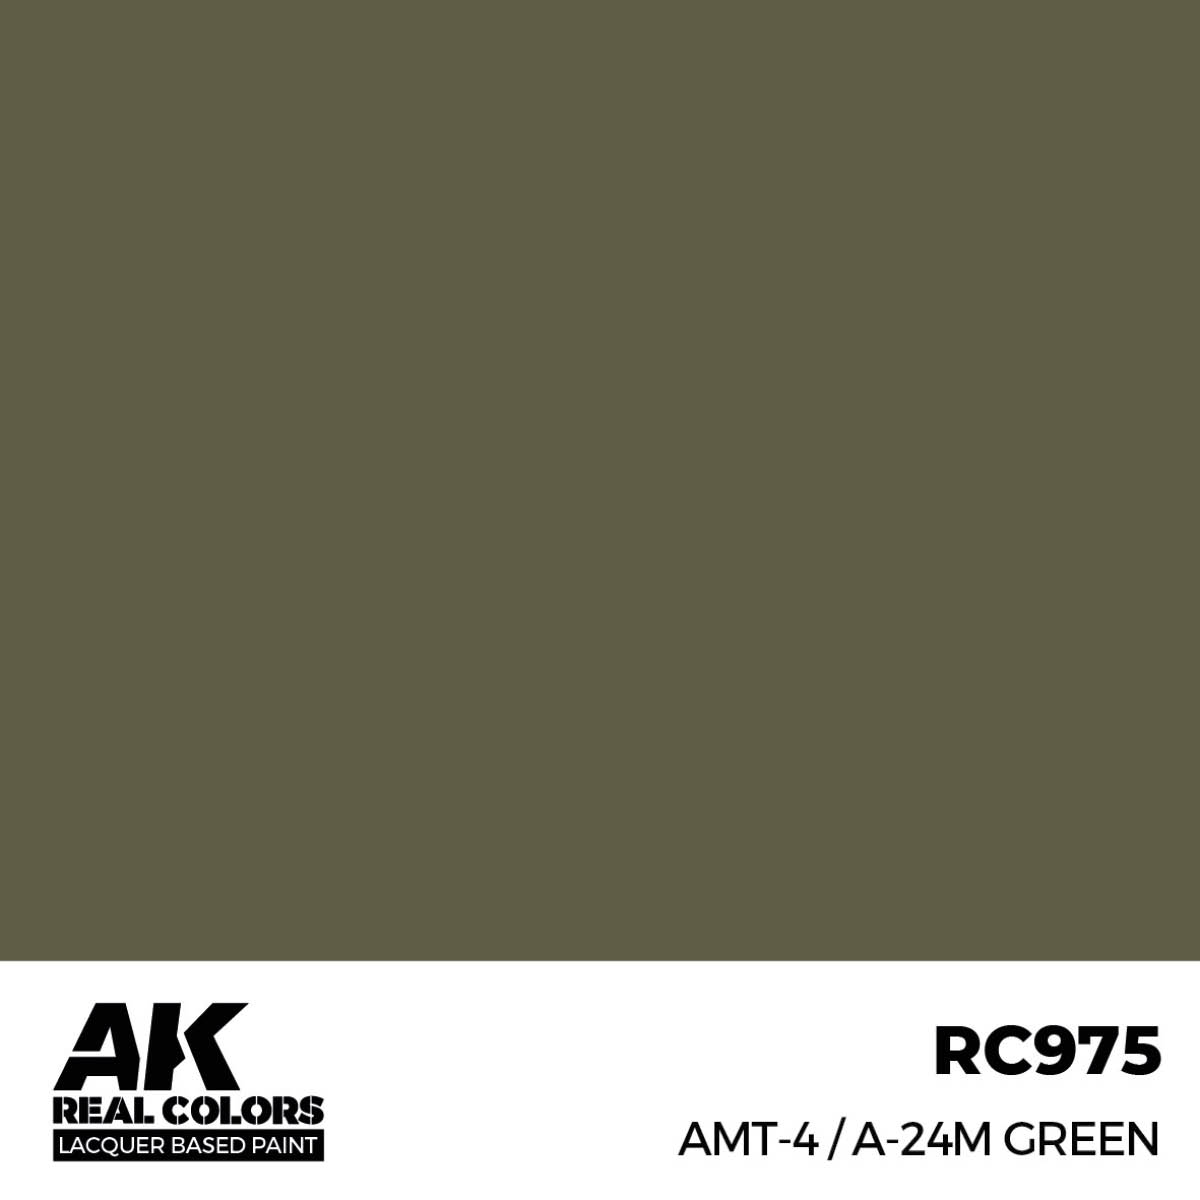 AMT-4 / A-24m Green